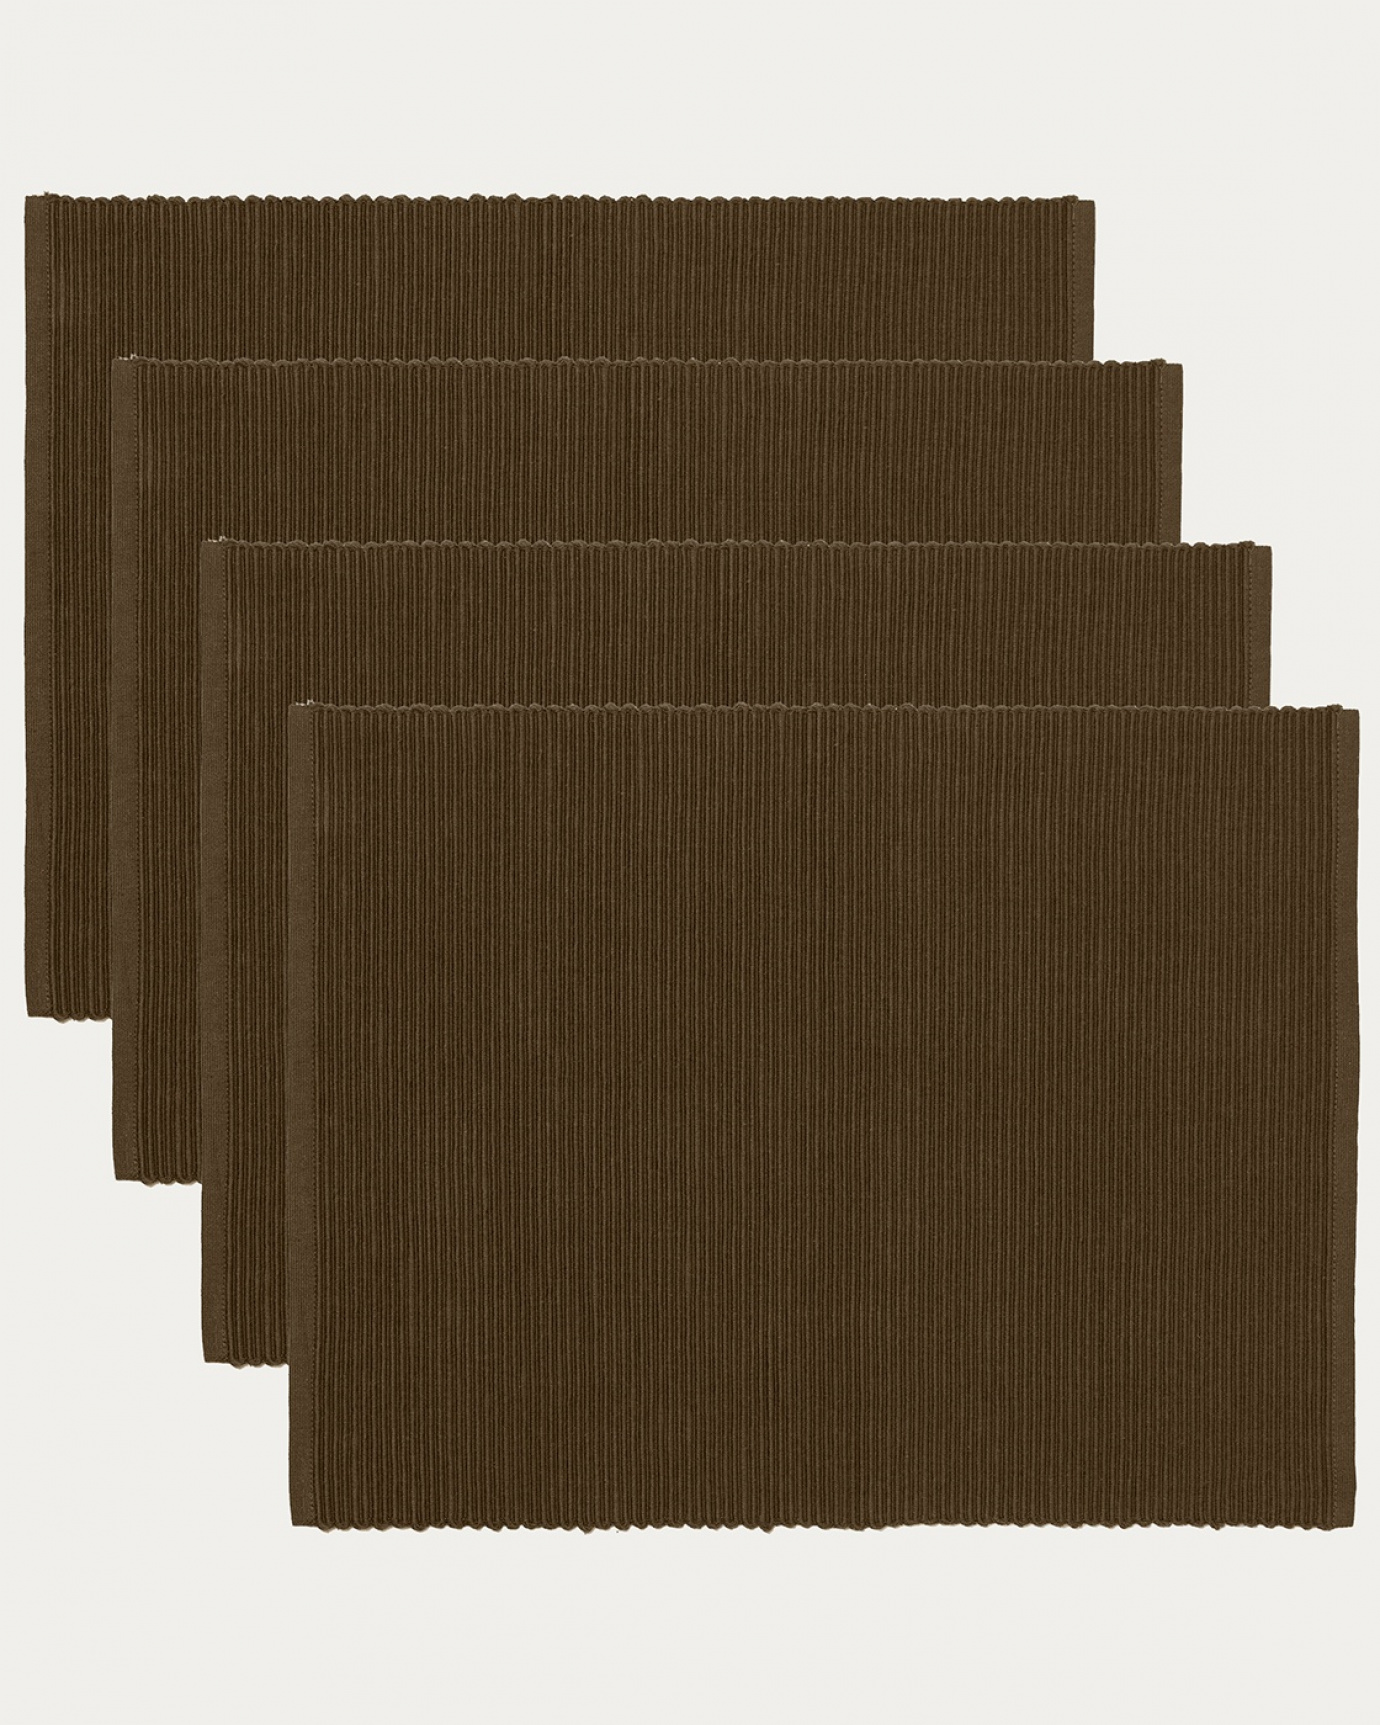 Produktbild björnbrun UNI bordstablett av mjuk bomull i ribbad kvalité från LINUM DESIGN. Storlek 35x46 cm och säljs i 4-pack.